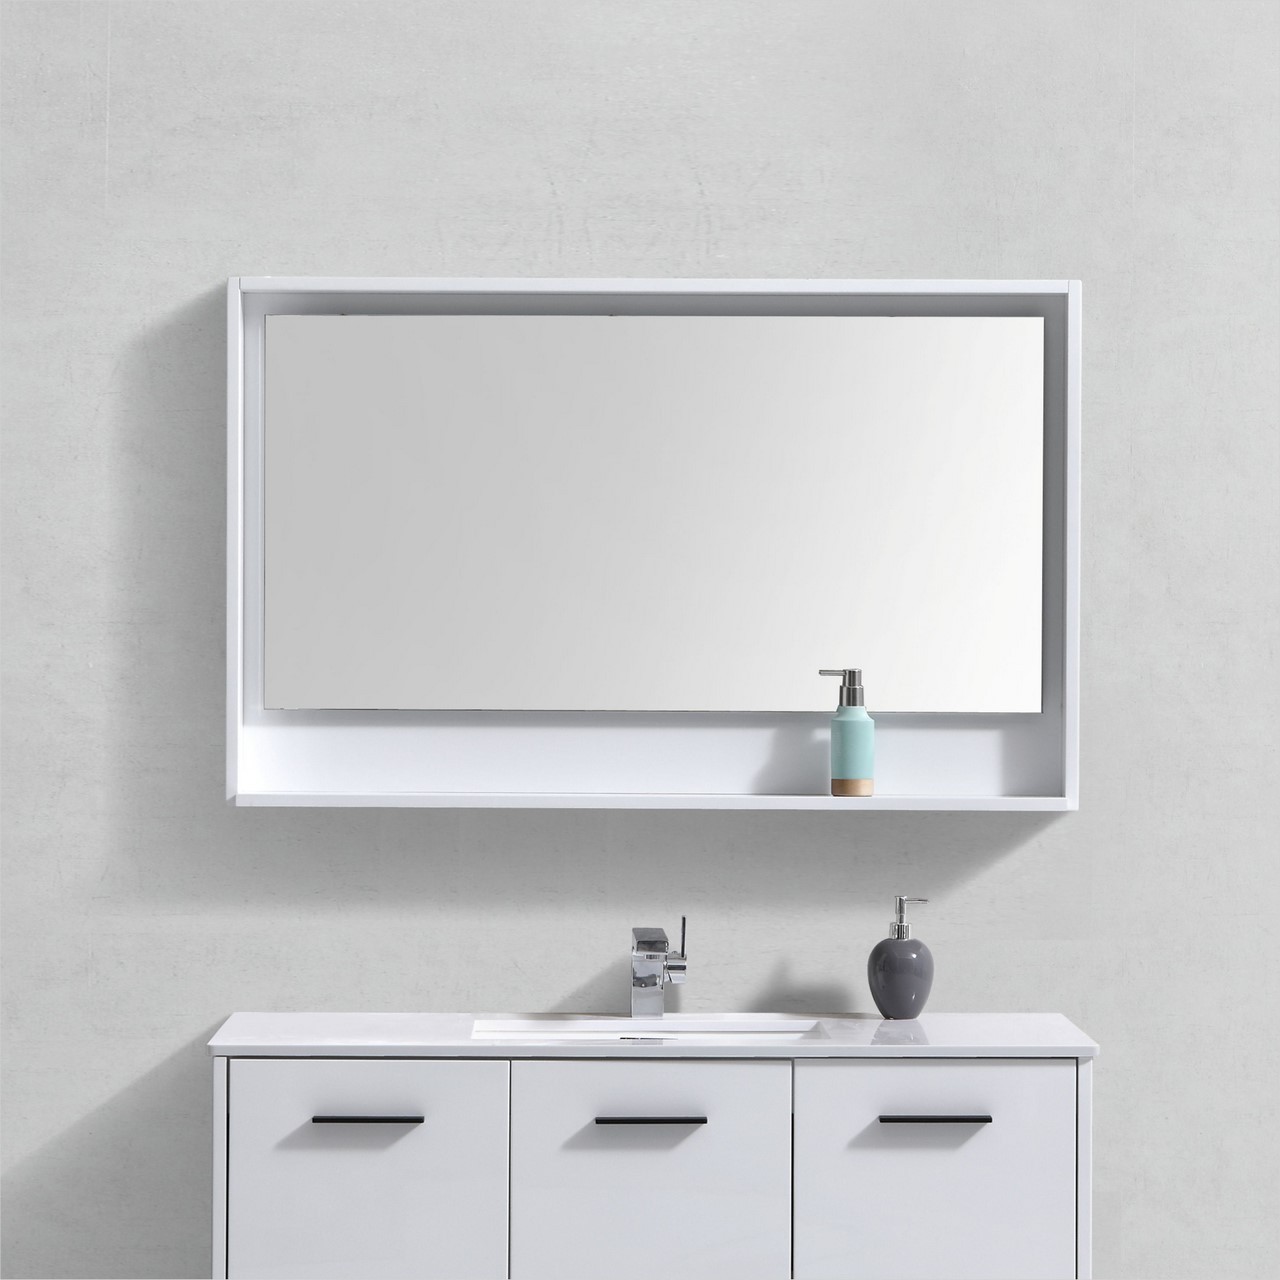 Bosco 48" Framed Mirror With Shelve - Gloss White Finish